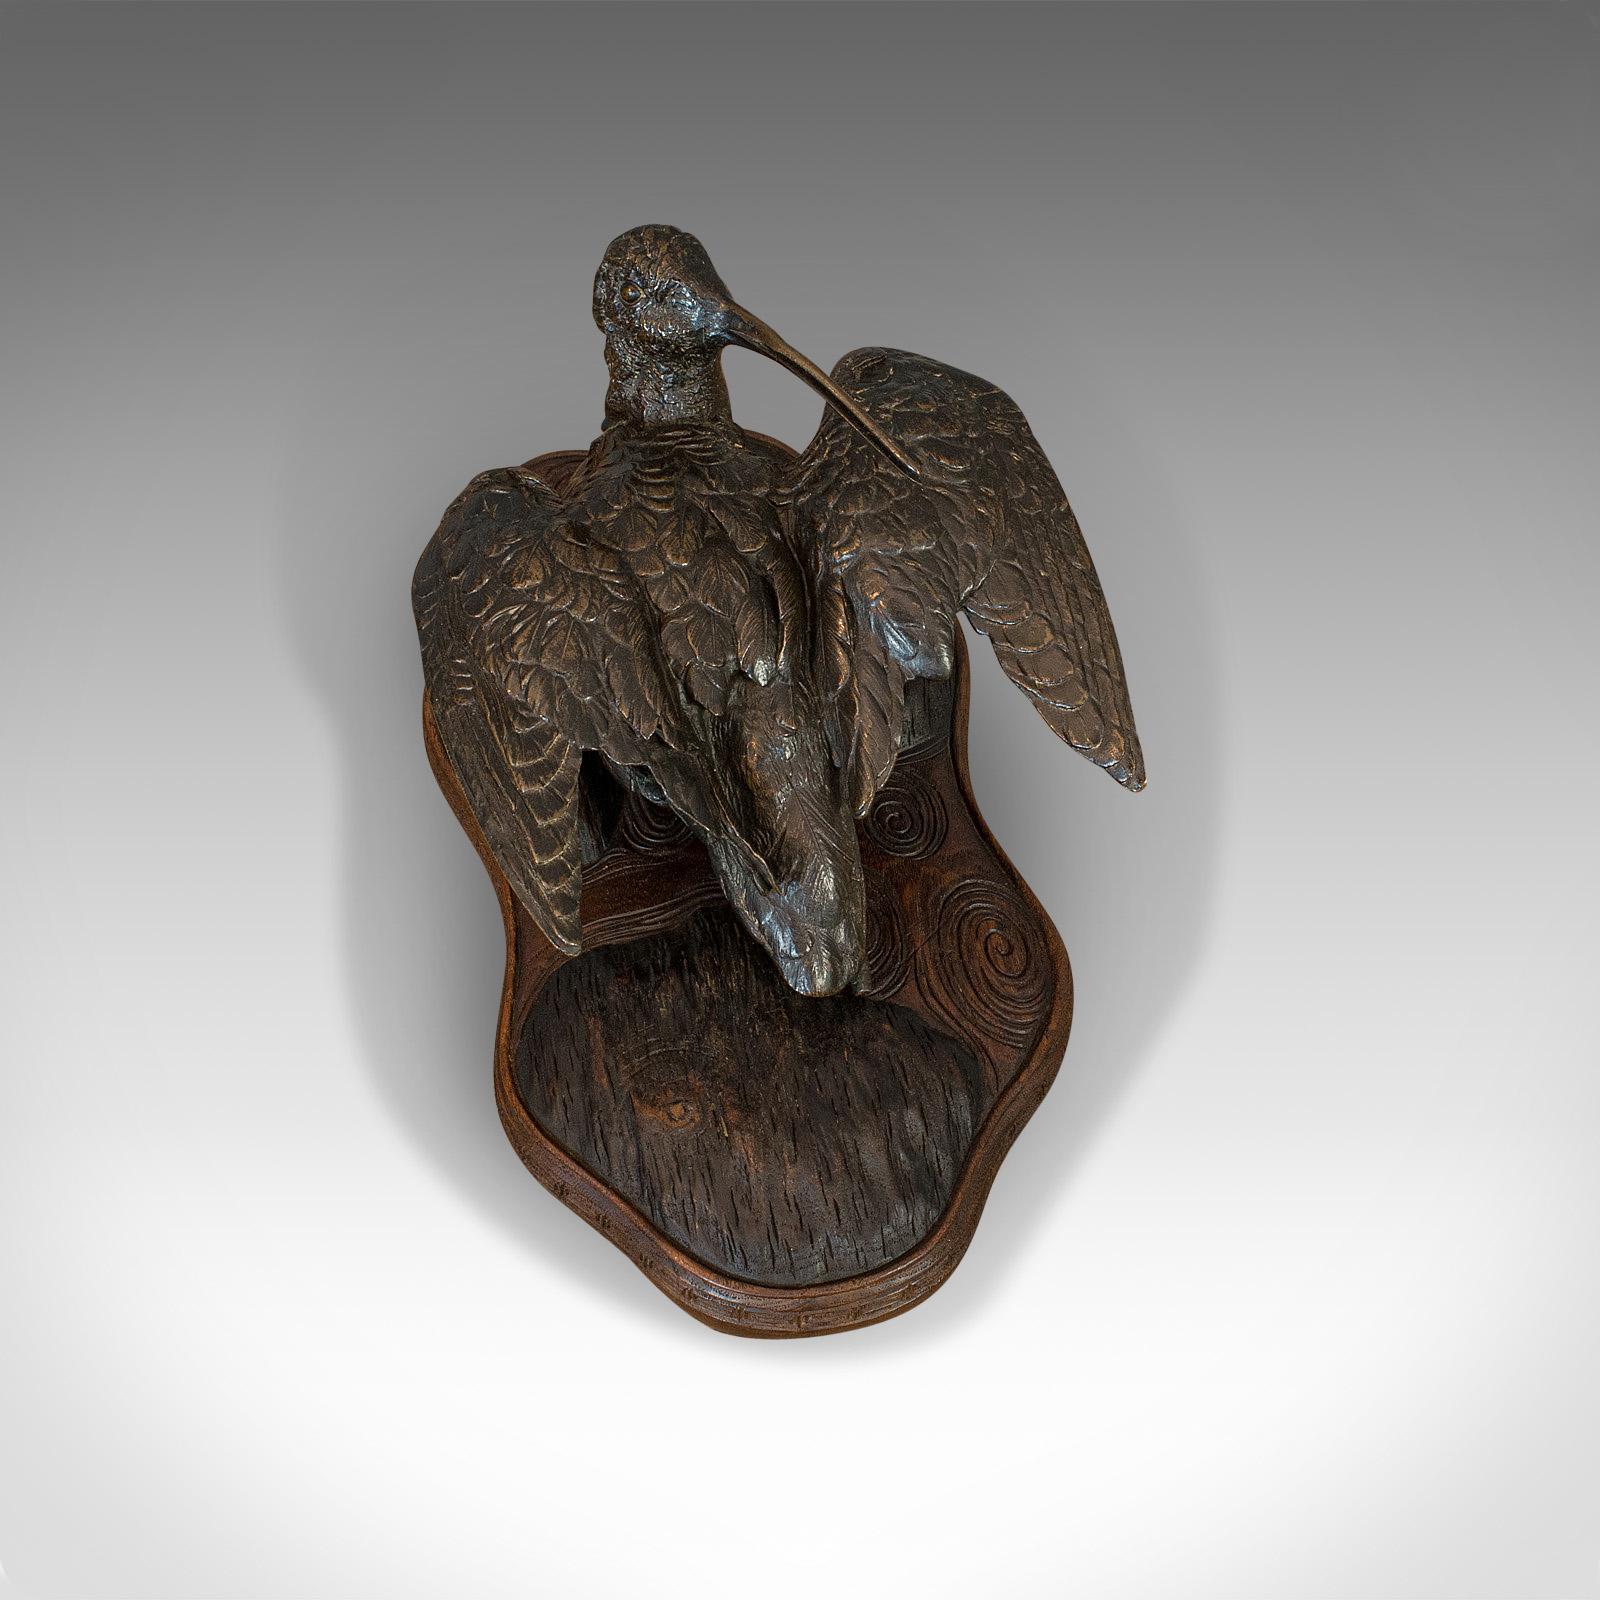 Antique, Curlew, Oriental, Bronze, Mahogany, Decorative, Small Bird, circa 1900 For Sale 1